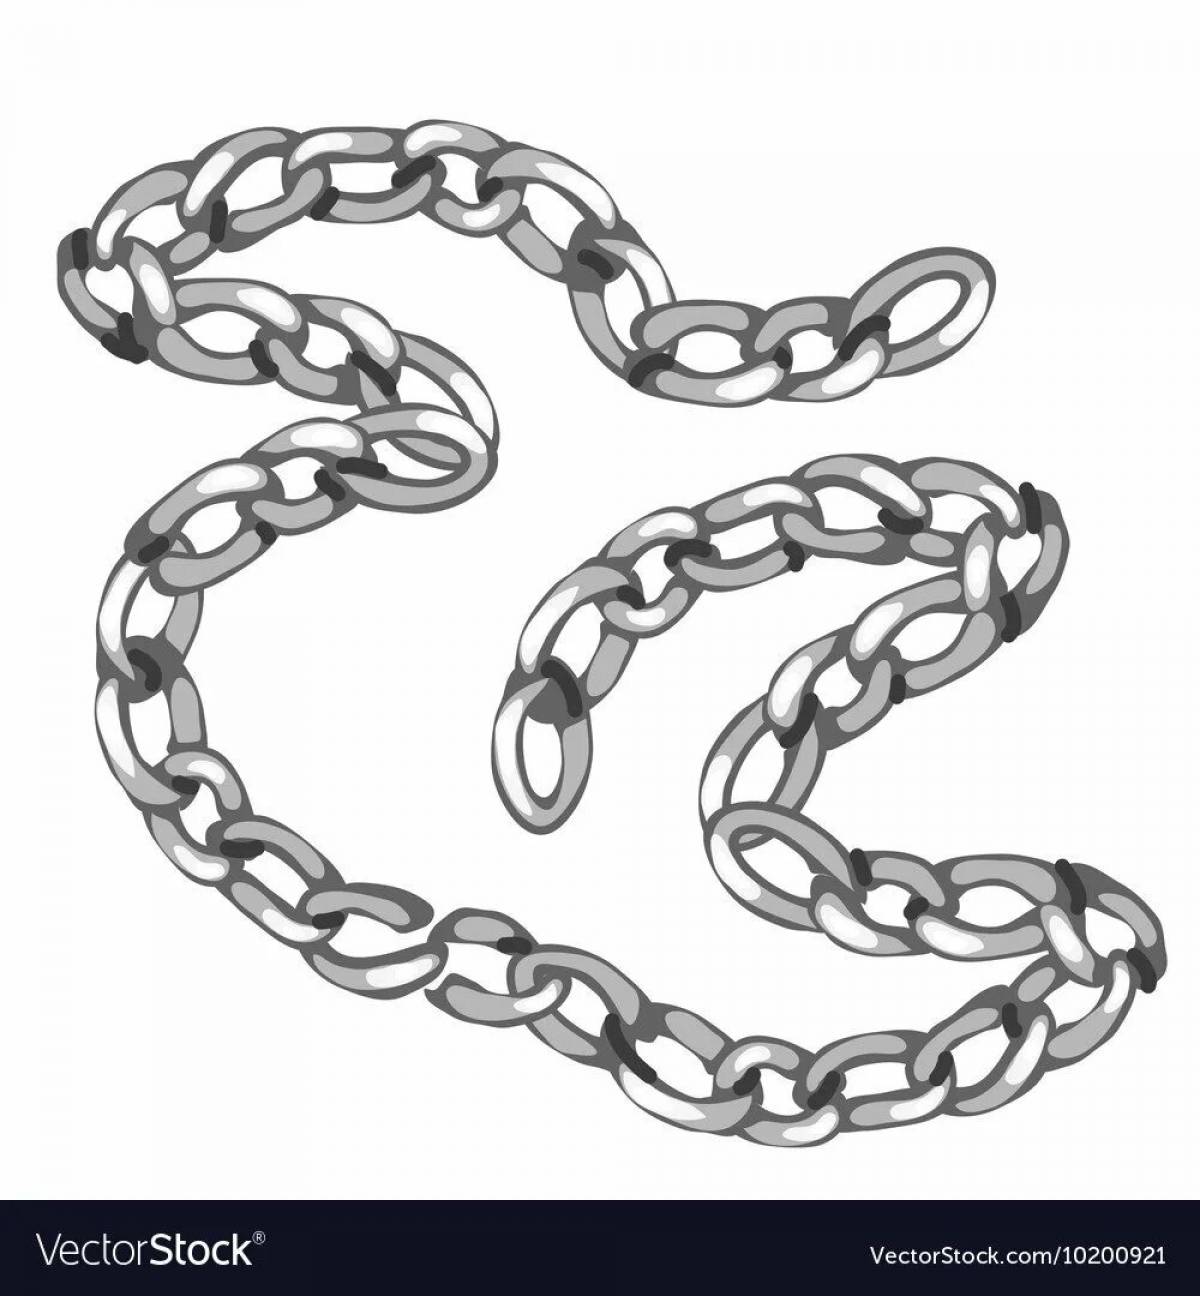 Chain #4